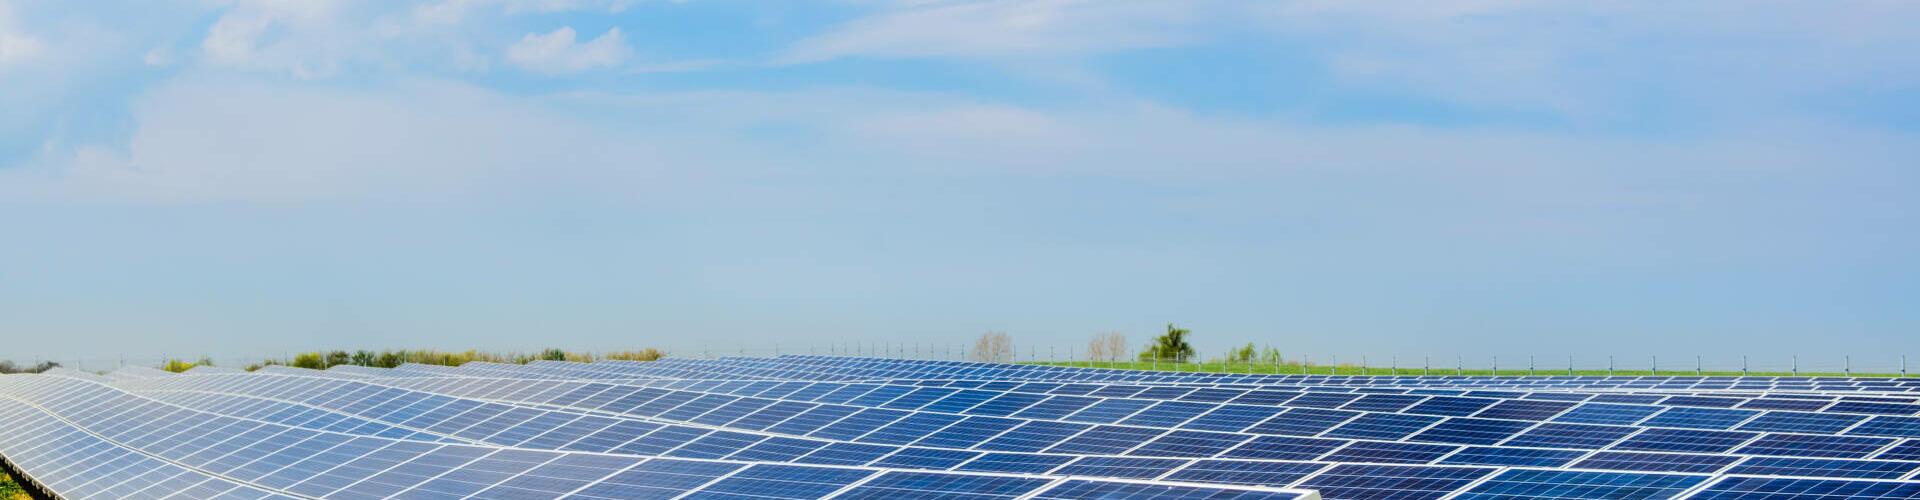 Fotovoltaik: Berufsmöglichkeiten in der Solartechnik